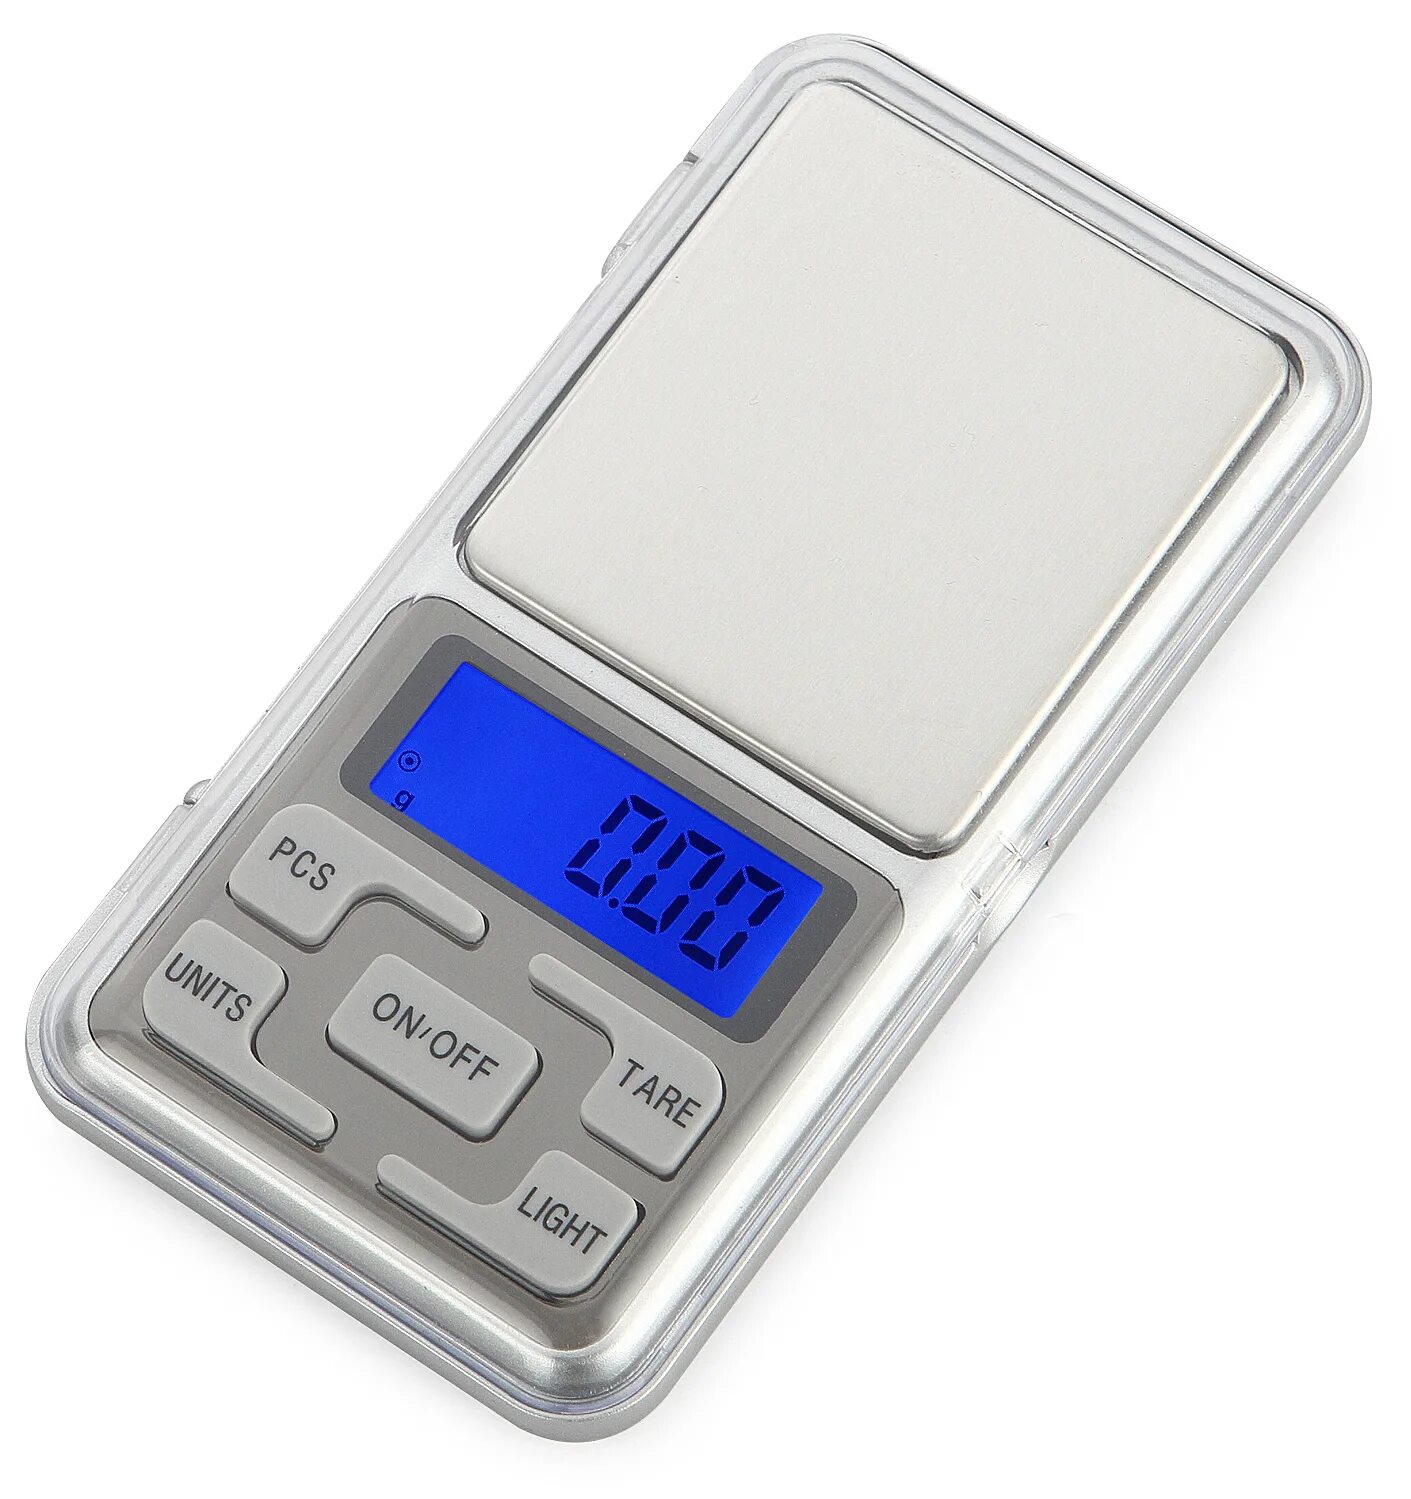 Карманные весы купить. Портативные весы Pocket Scale. 500g 0.1g Digital Pocket Scale Precision Weight Electronic Balance hot. Весы 0.01 гр 100-200 НПВ. Весы электронные карманные Pocket Scale мн-500.